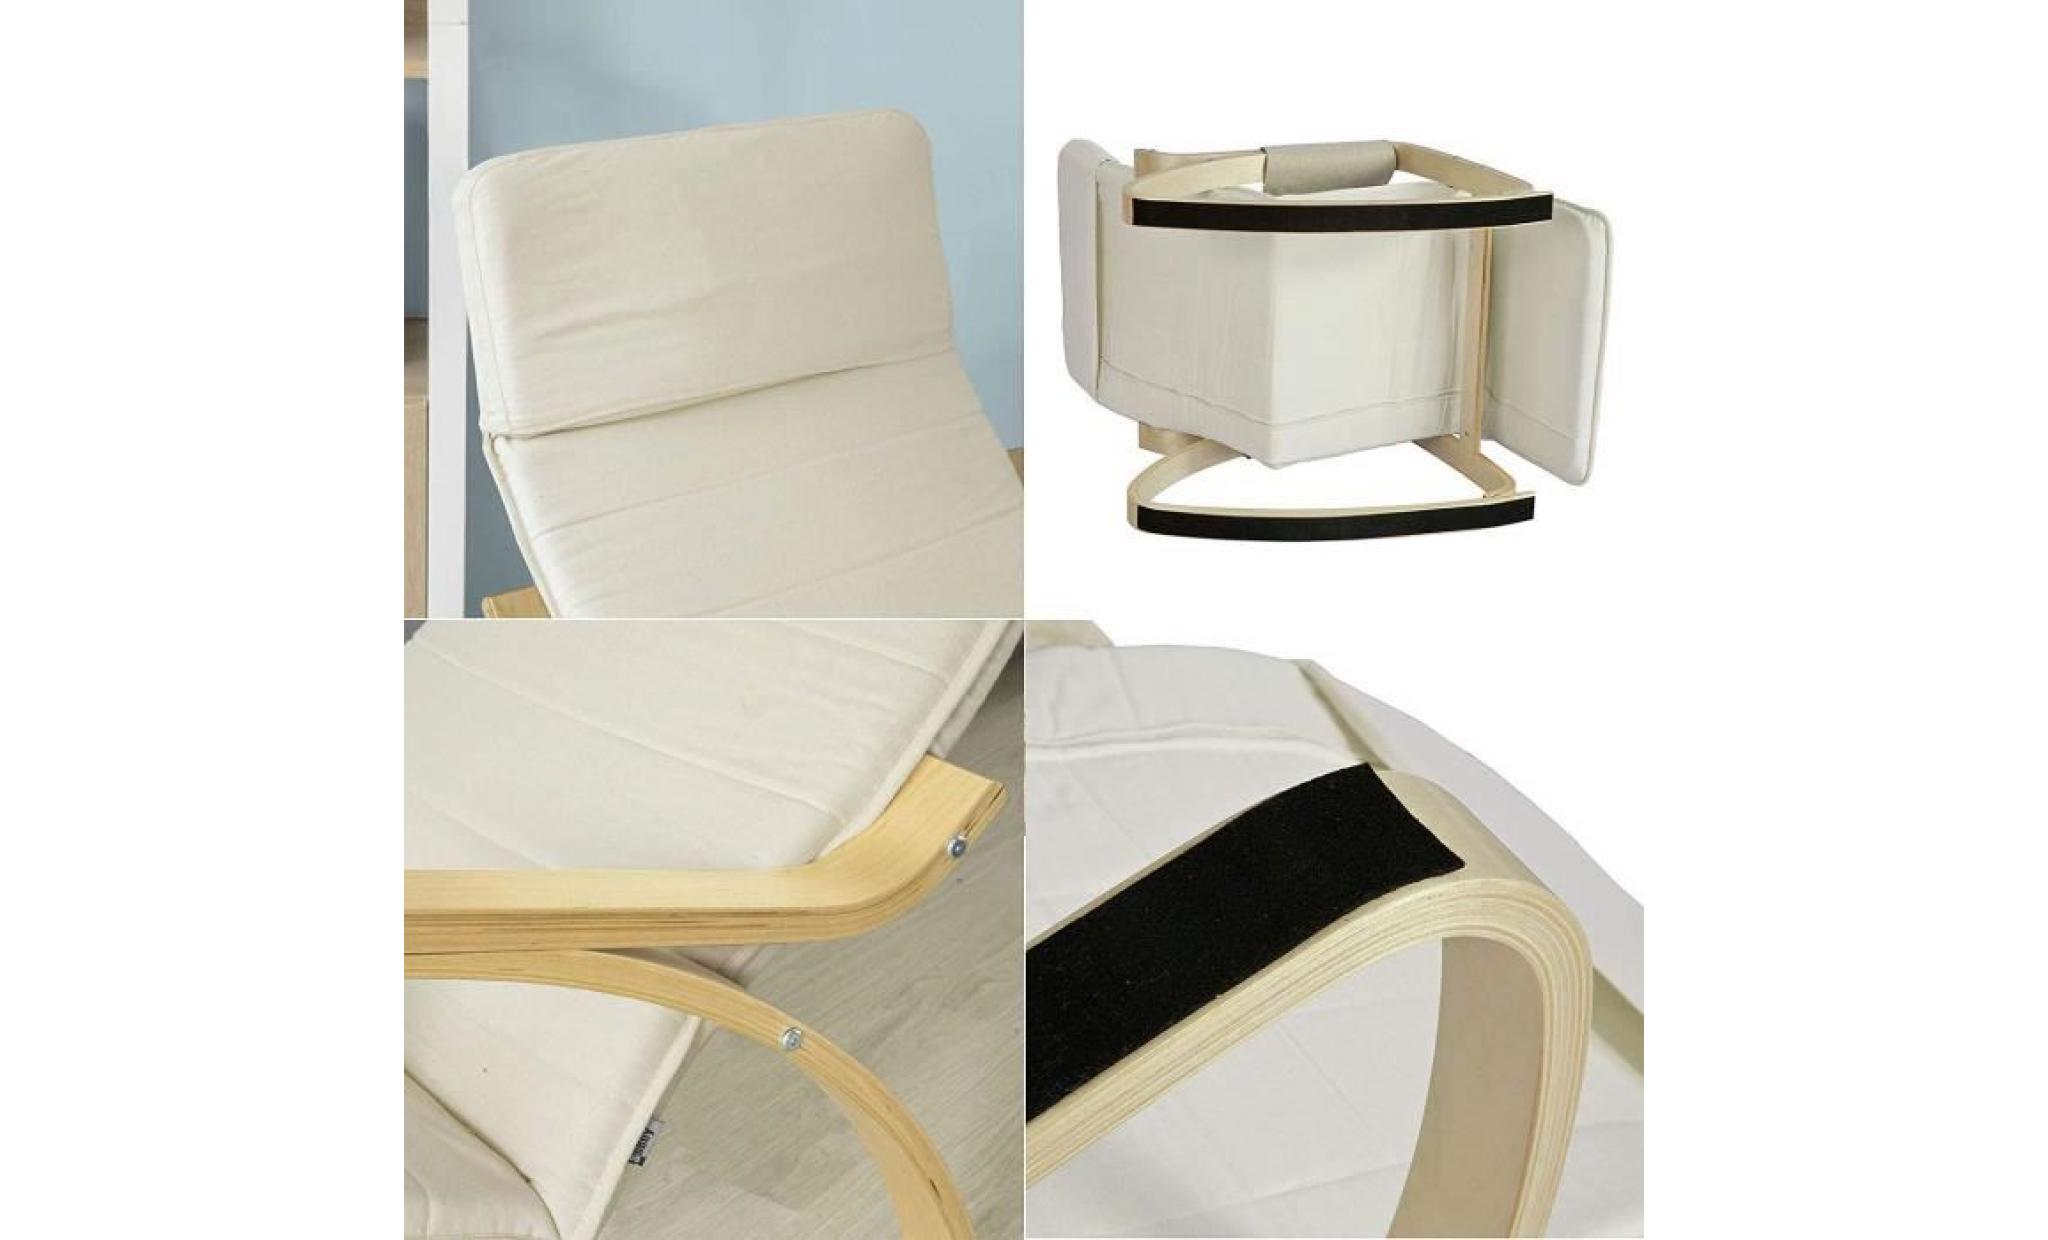 fauteuil à bascule avec repose pied réglable design rocking chair fauteuil relax bouleau flexible (beige) pas cher